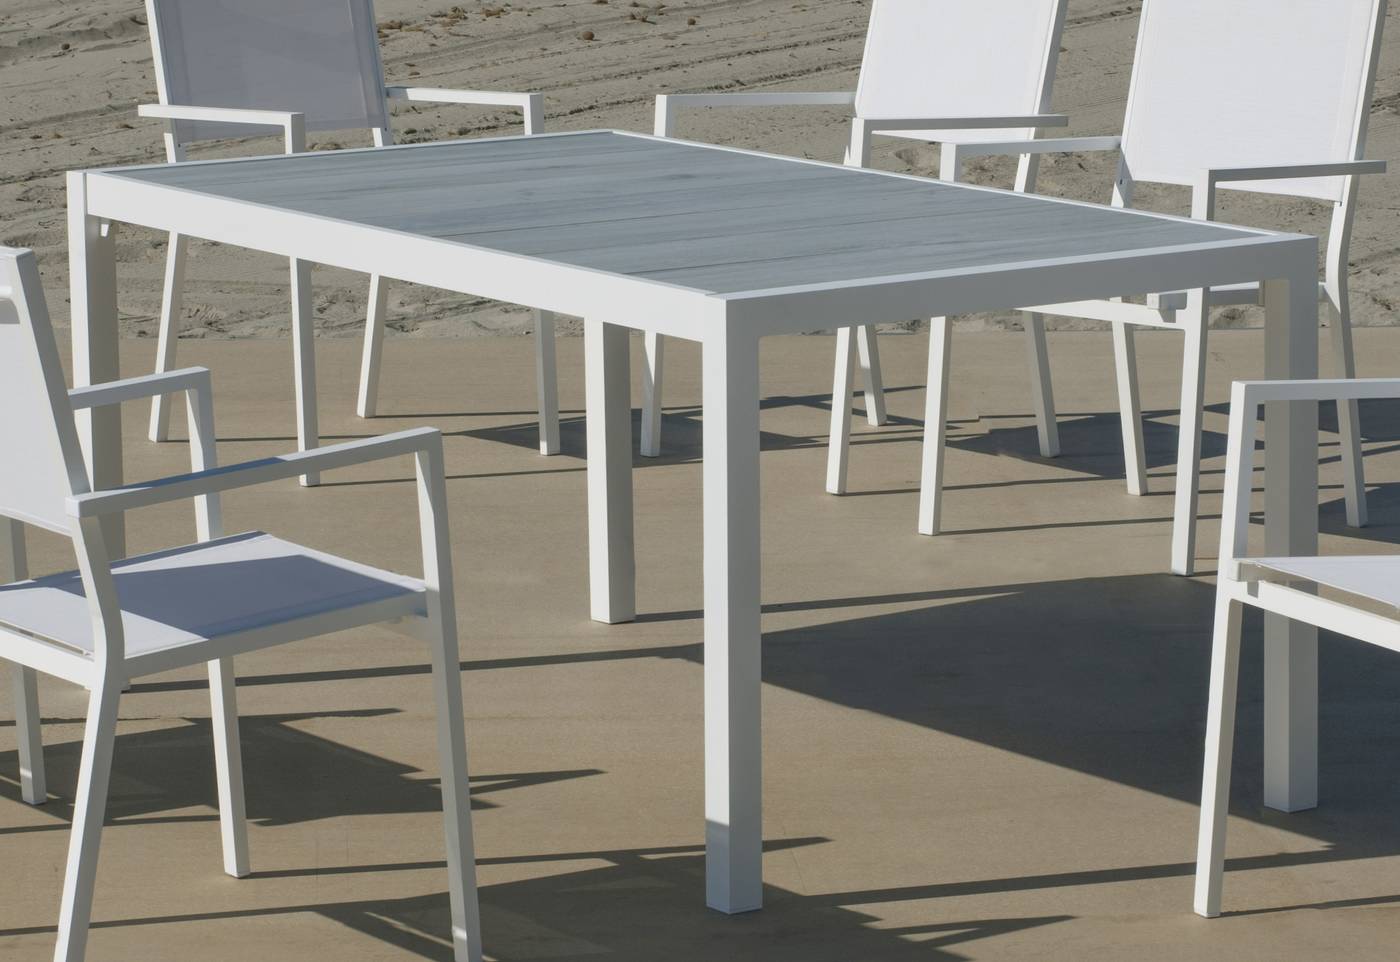 Mesa rectangular de aluminio, con tablero cerámico de 160 cm. Disponible en color blanco y antracita.